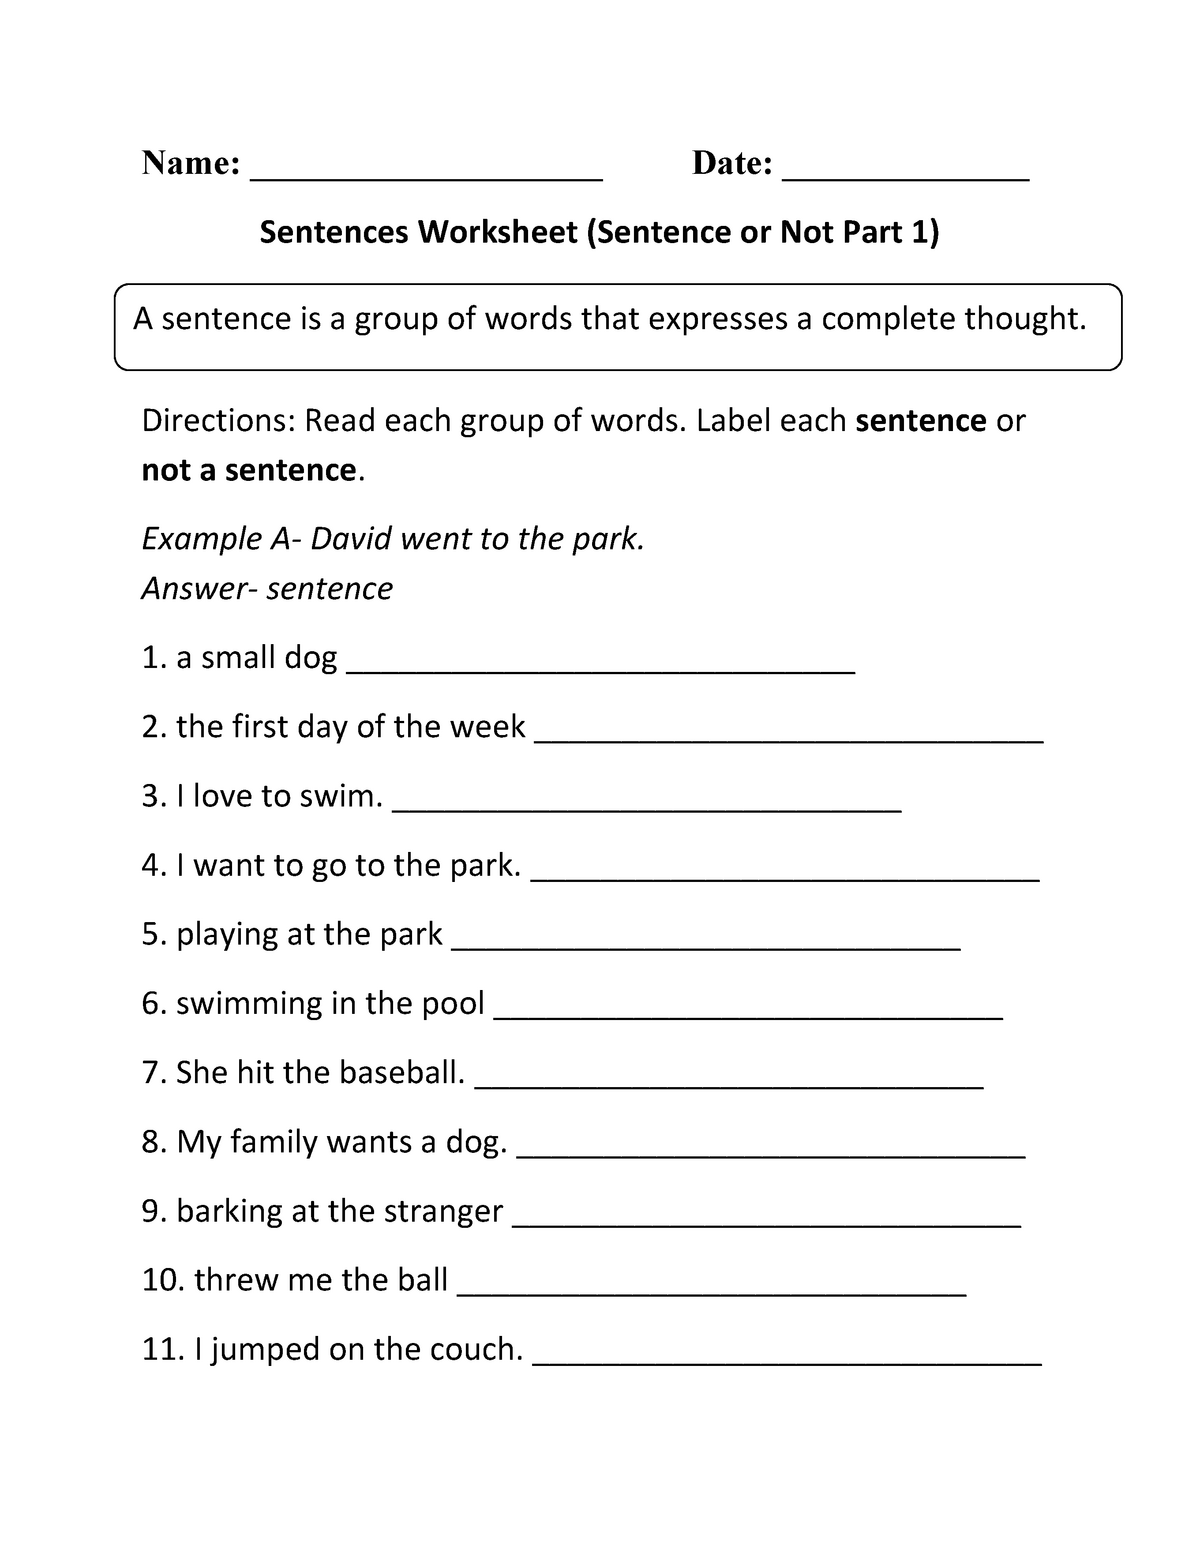 sentence-worksheet-for-grade-2-name-date